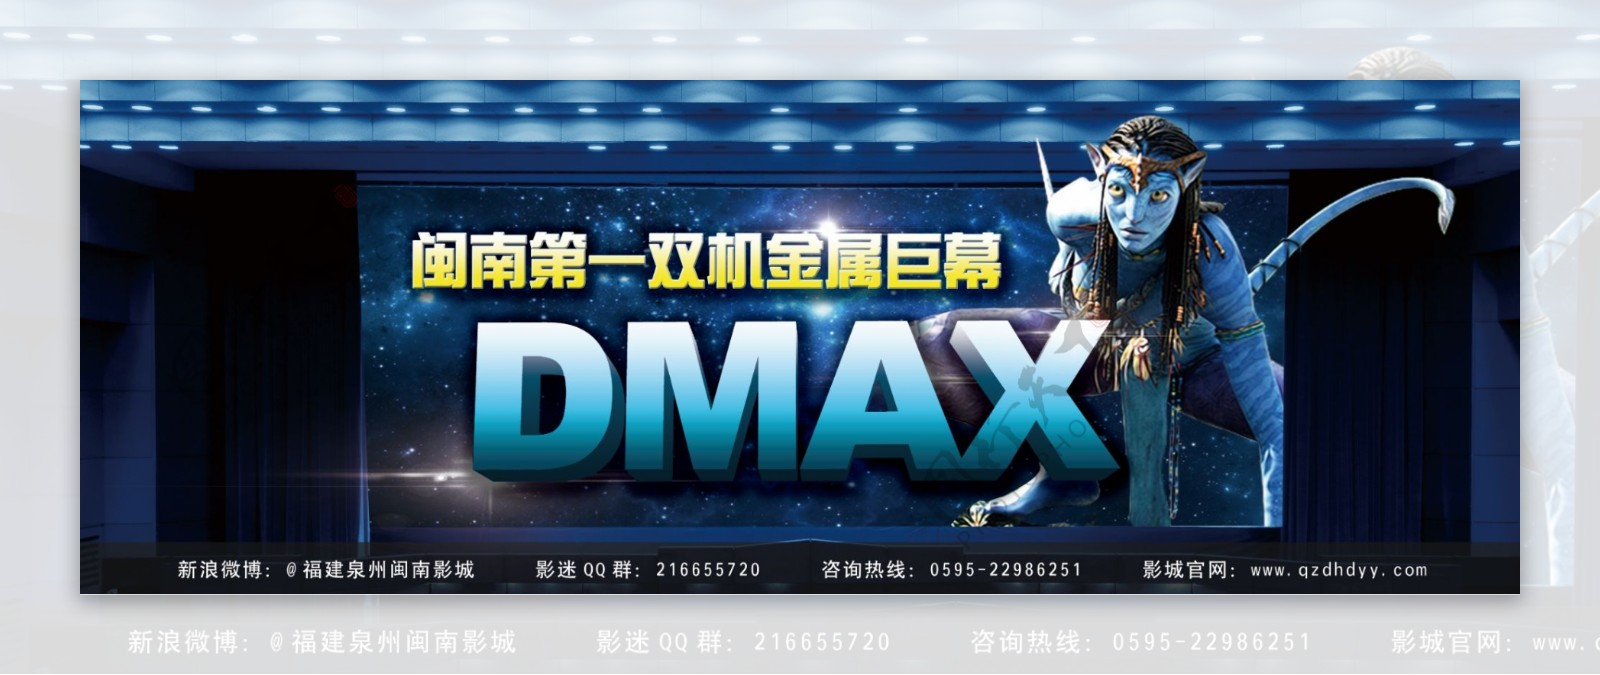 DMAX宣传展板图片